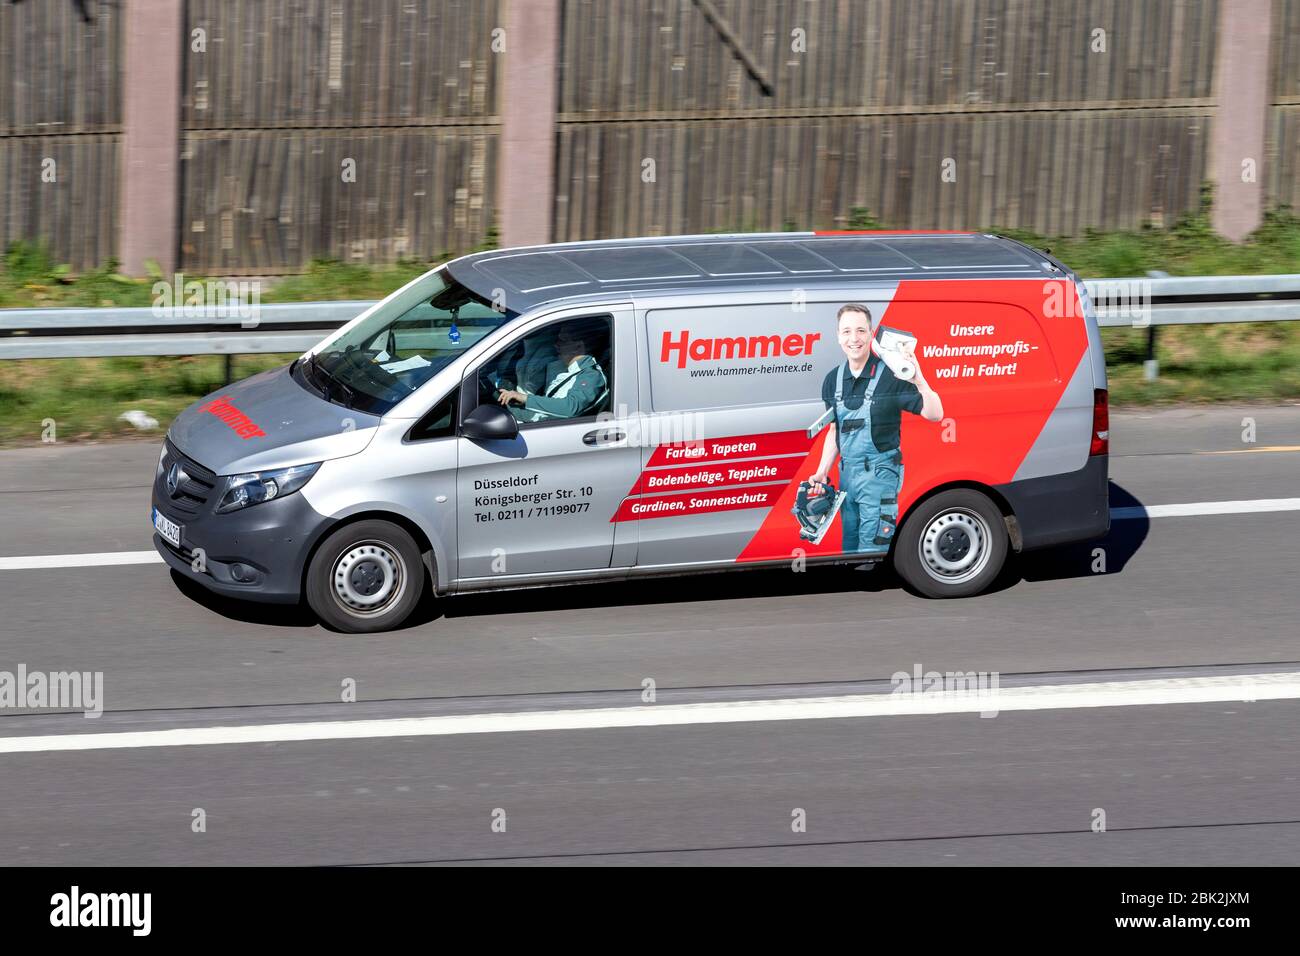 Hammer Mercedes-Benz Vito auf Autobahn. Hammer ist eine deutsche Einzelhandelskette, die Produkte und Dienstleistungen rund um das Thema Interior Design anbietet. Stockfoto